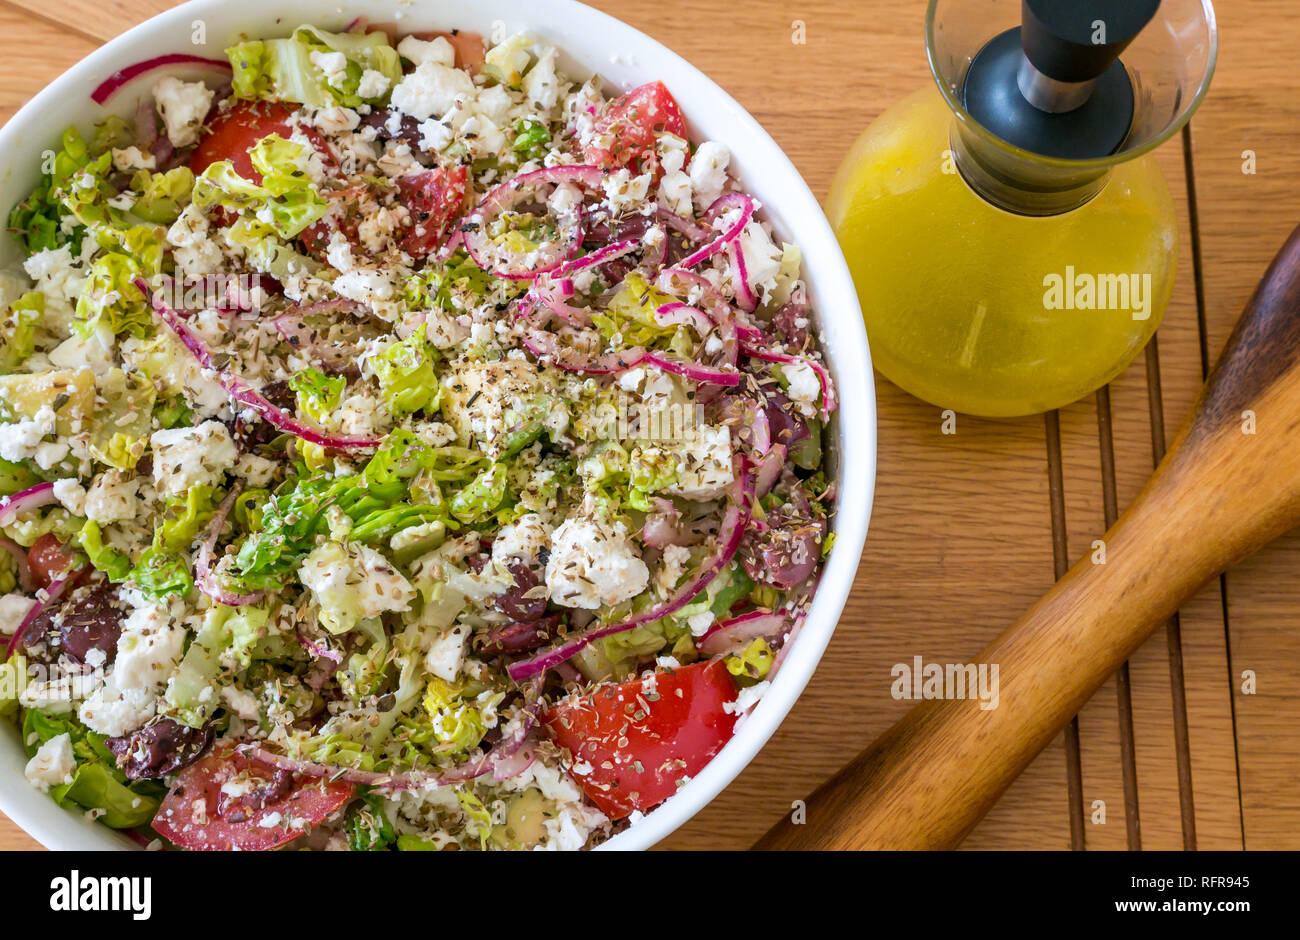 Weißes geschirr Salat Schüssel mit Griechischer Salat mit Feta, Tomaten, roten Zwiebeln, Avocado, Salat und Lemon vinaigrette Dressing in Glas Glas Stockfoto